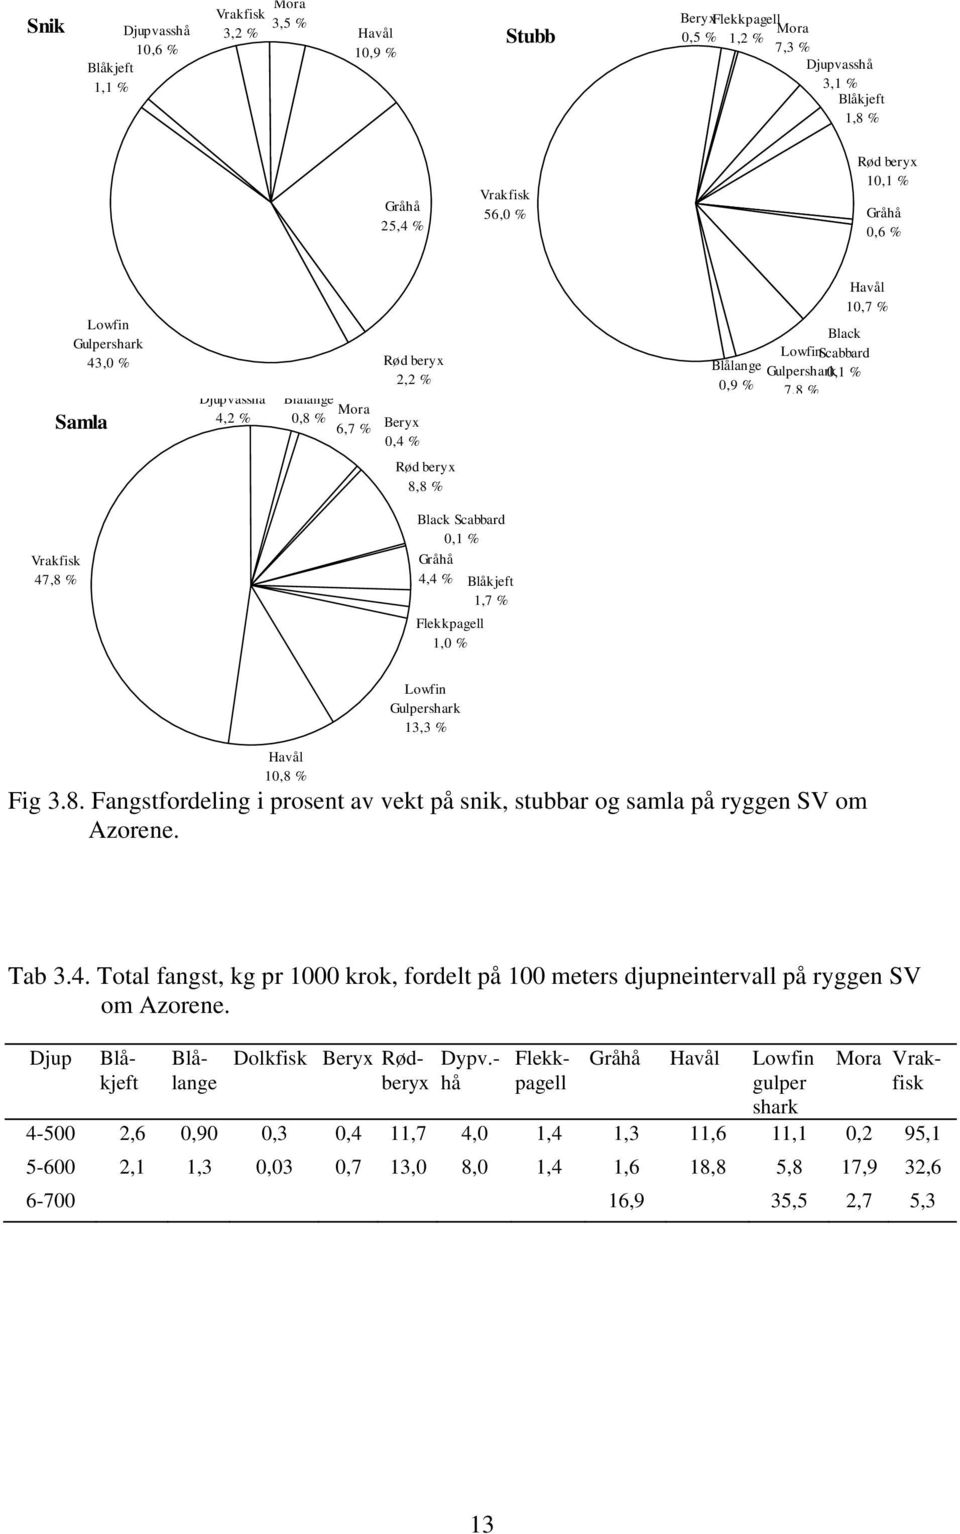 Vrakfisk 47,8 % Black Scabbard,1 % Gråhå 4,4 % Blåkjeft 1,7 % Flekkpagell 1, % Lowfin Gulpershark 13,3 % Havål 1,8 % Fig 3.8. Fangstfordeling i prosent av vekt på snik, stubbar og samla på ryggen SV om Azorene.